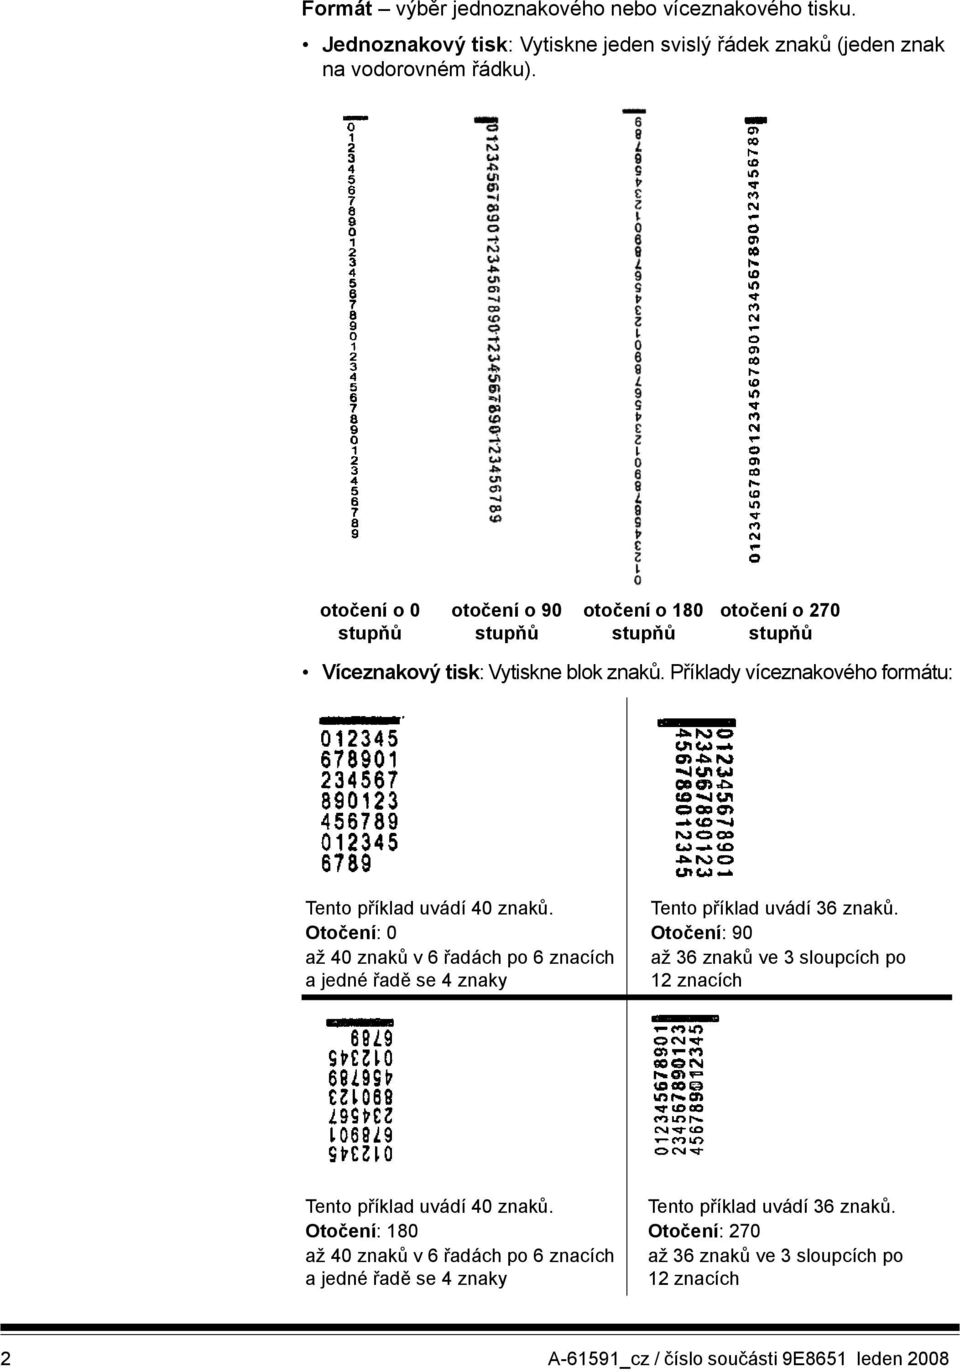 Příklady víceznakového formátu: Tento příklad uvádí 40 znaků. Otočení: 0 až 40 znaků v6 řadách po 6 znacích a jedné řadě se 4 znaky Tento příklad uvádí 36 znaků.